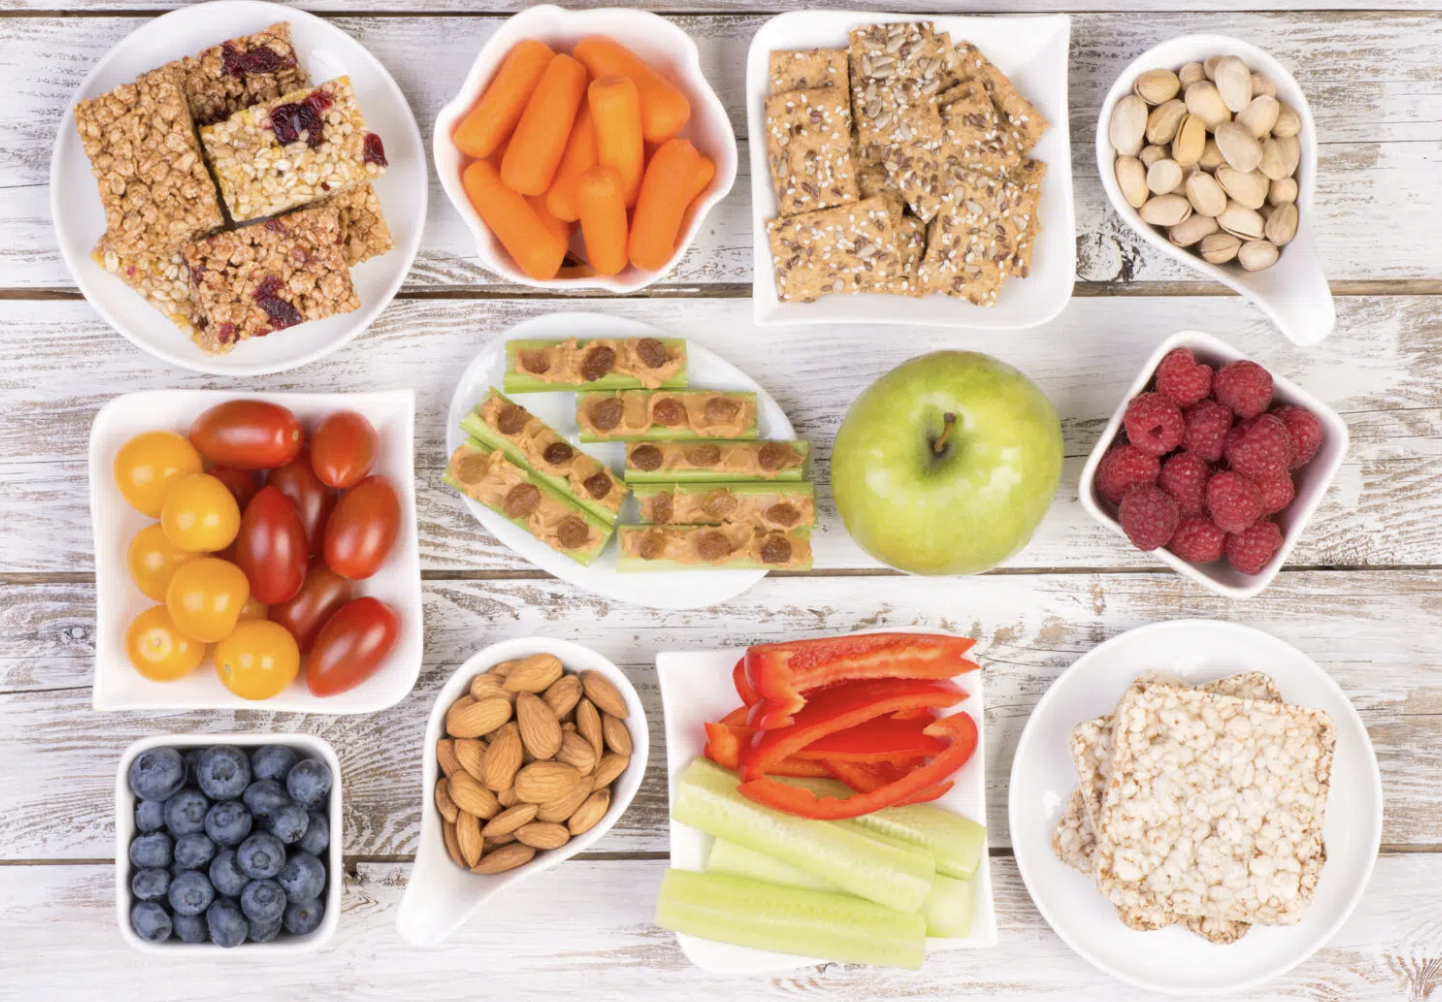 Vuelta a clases: 8 snacks saludables que los chicos pueden llevar al colegio